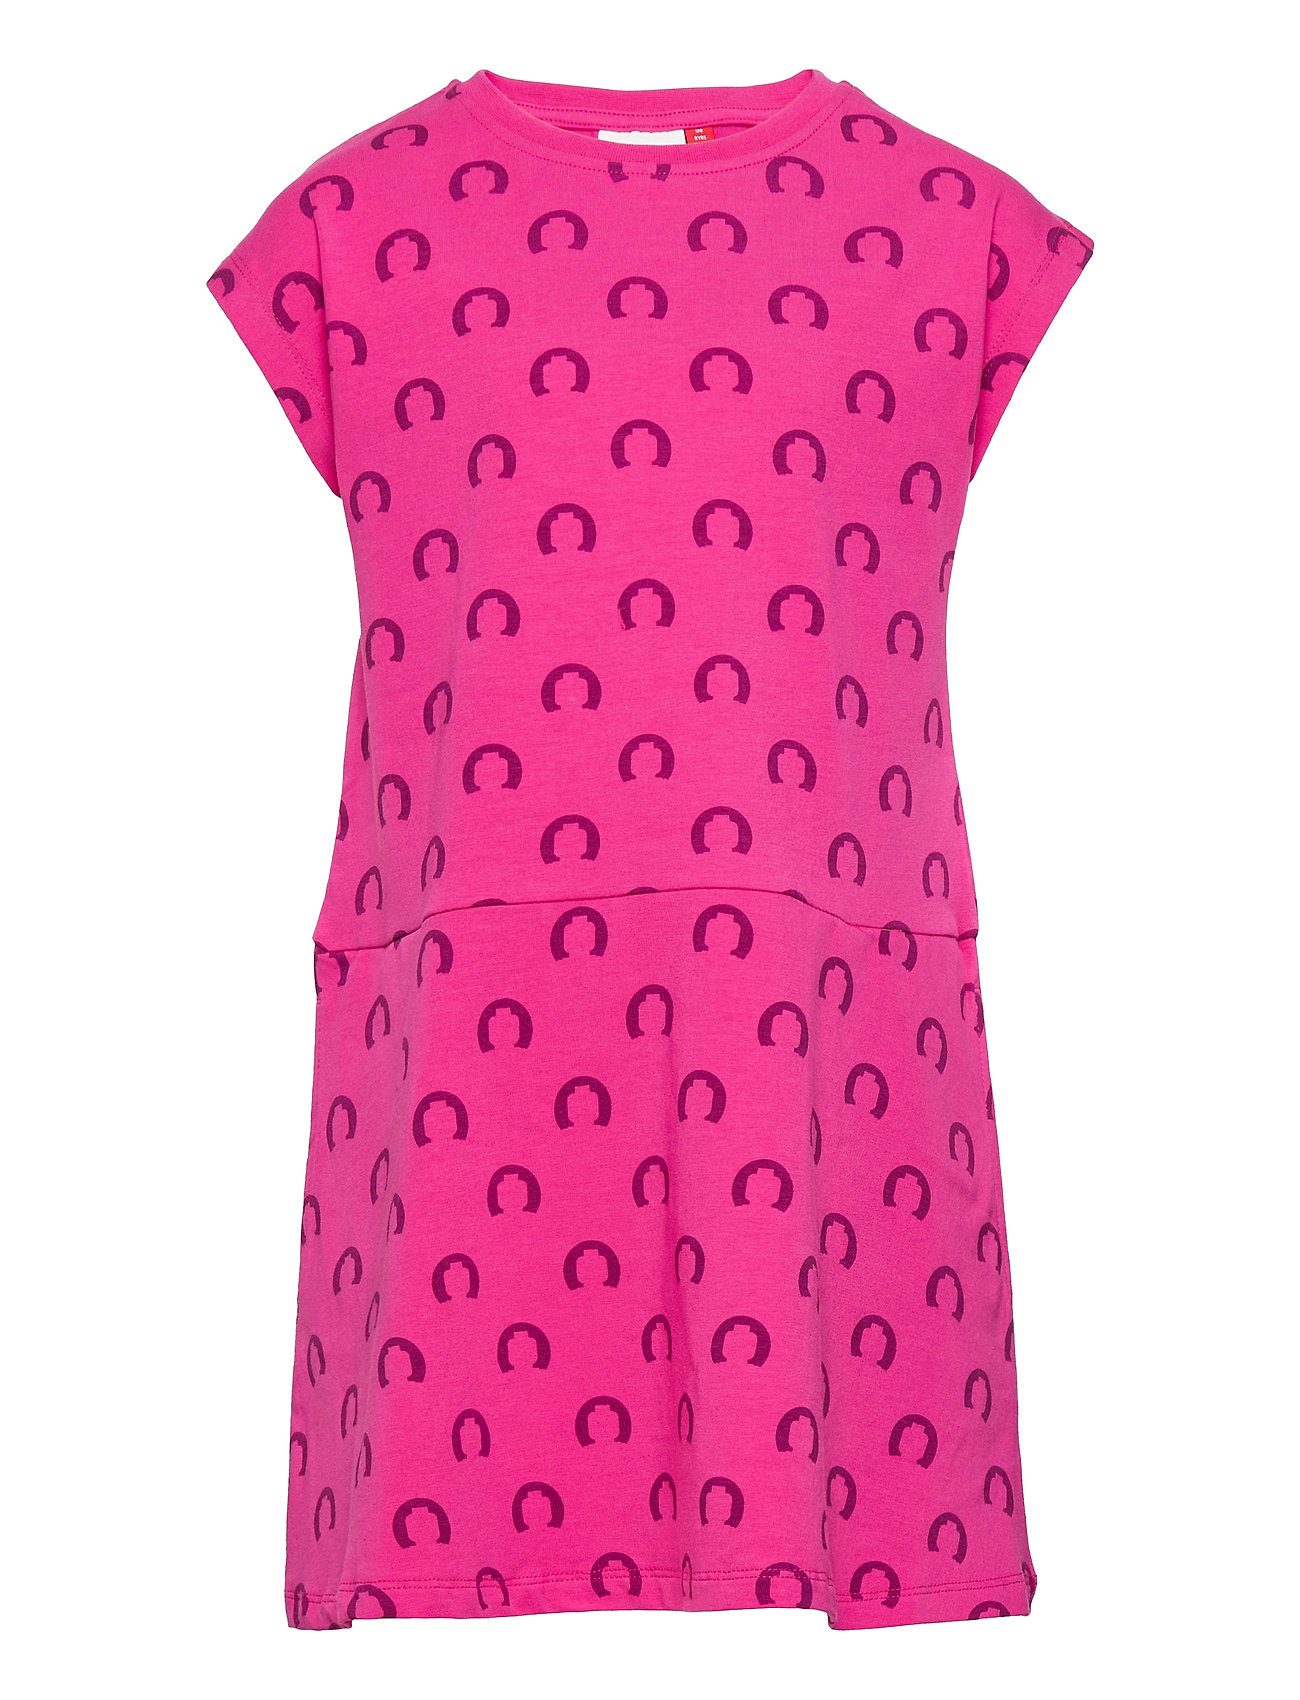 Lwdagny 304 - Dress Mekko Vaaleanpunainen Lego Wear, Lego wear